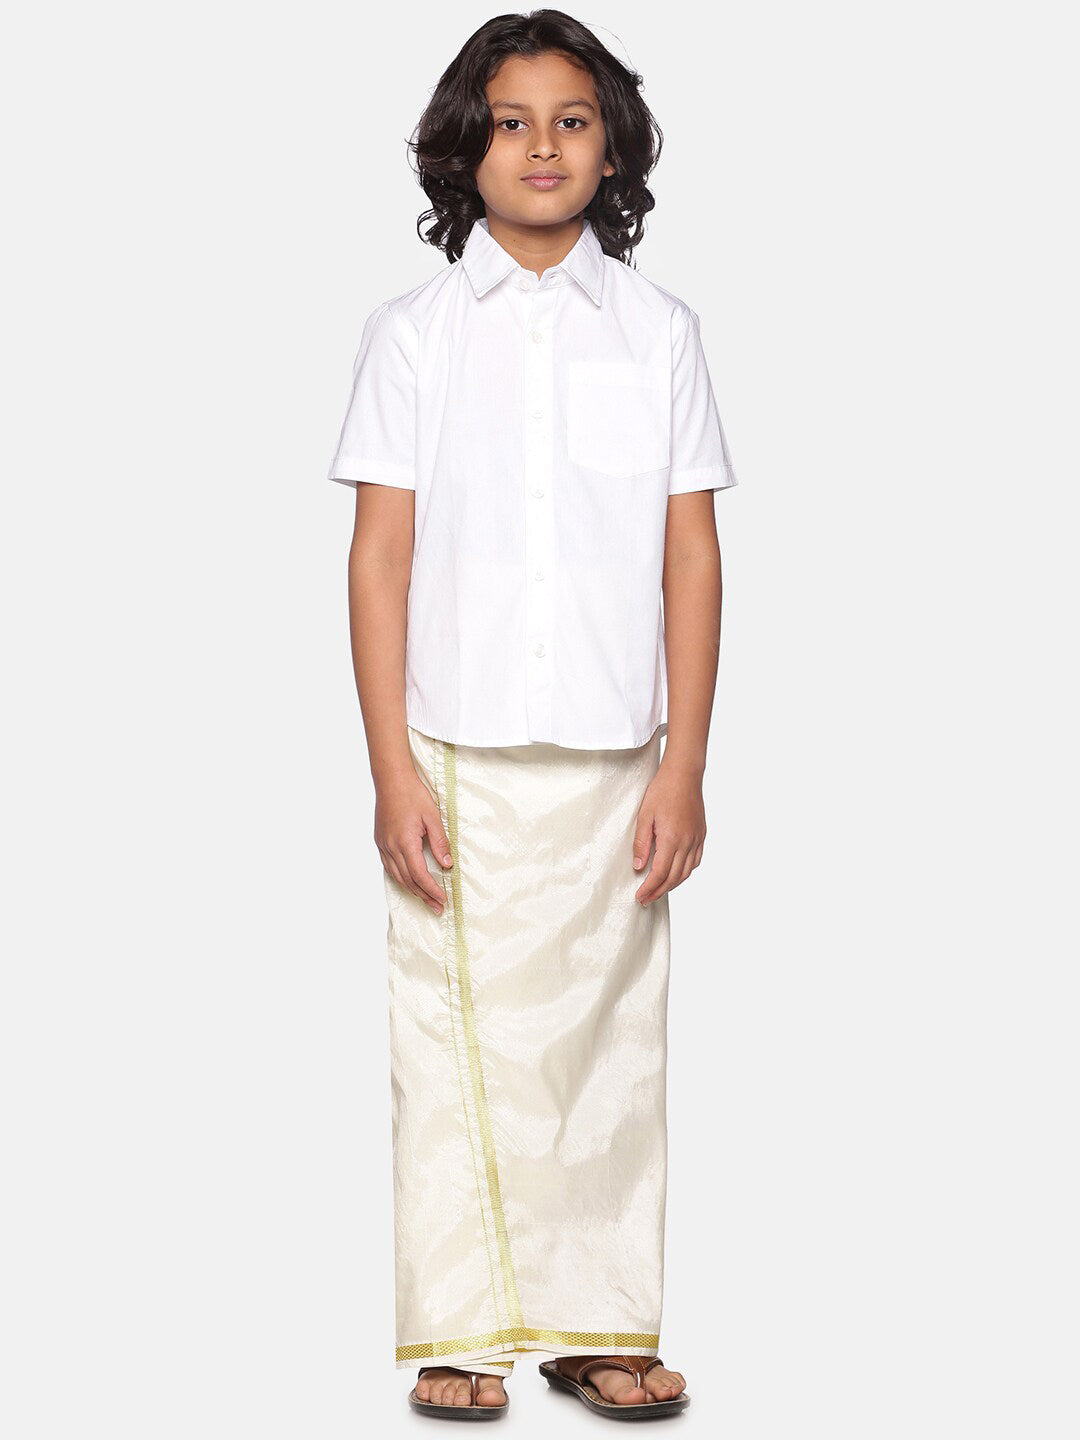 Sethukrishna Boys White Shirt with Readymade Dhoti - Distacart